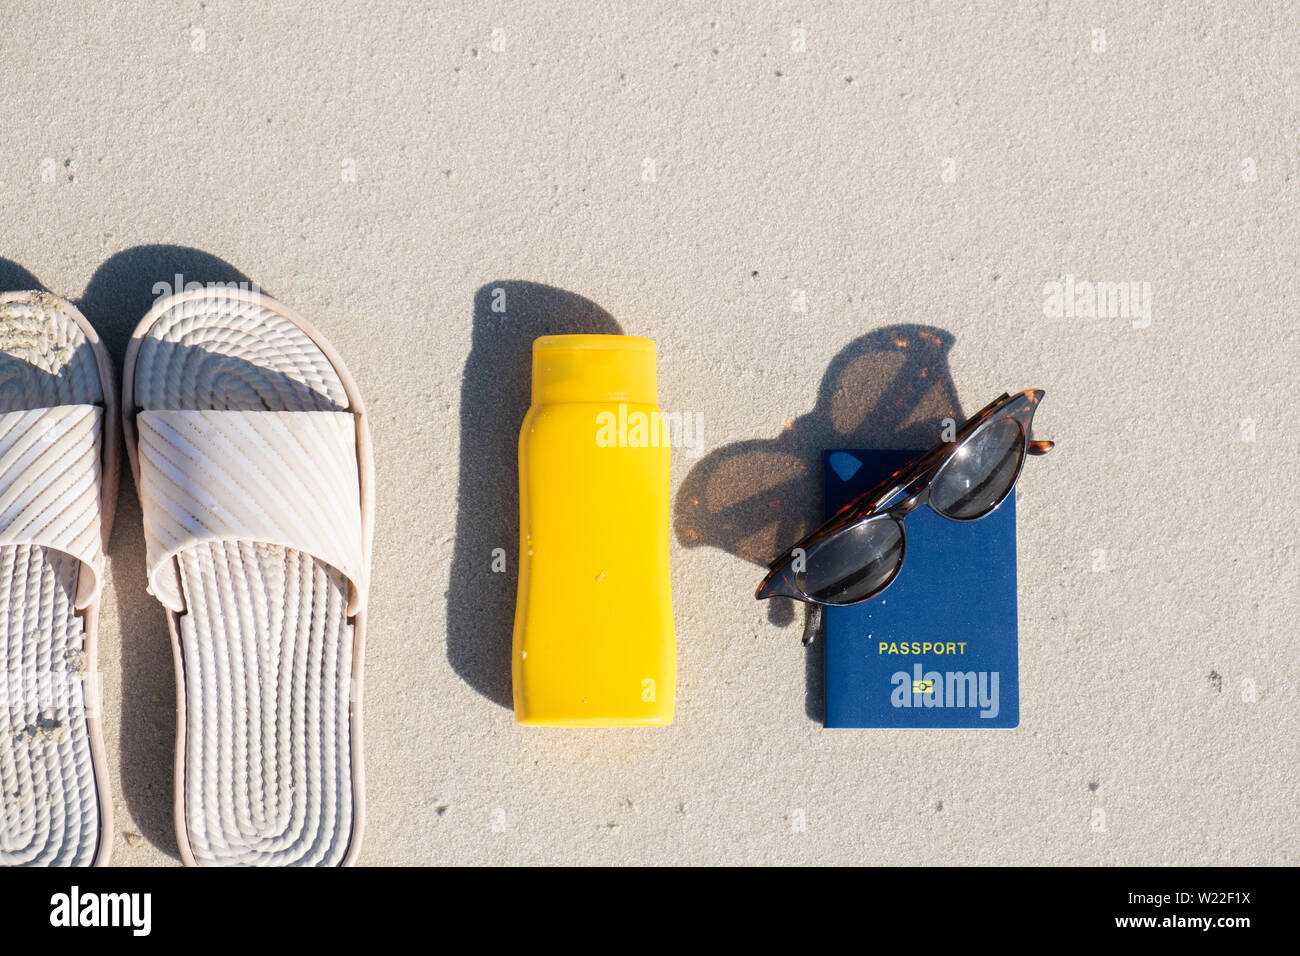 Riposo in spiaggia: pantofole, crema protettiva e occhiali da sole sulla sabbia pulita. Accessori per vacanze al mare o le vacanze estive e passaporto biometrico Foto Stock